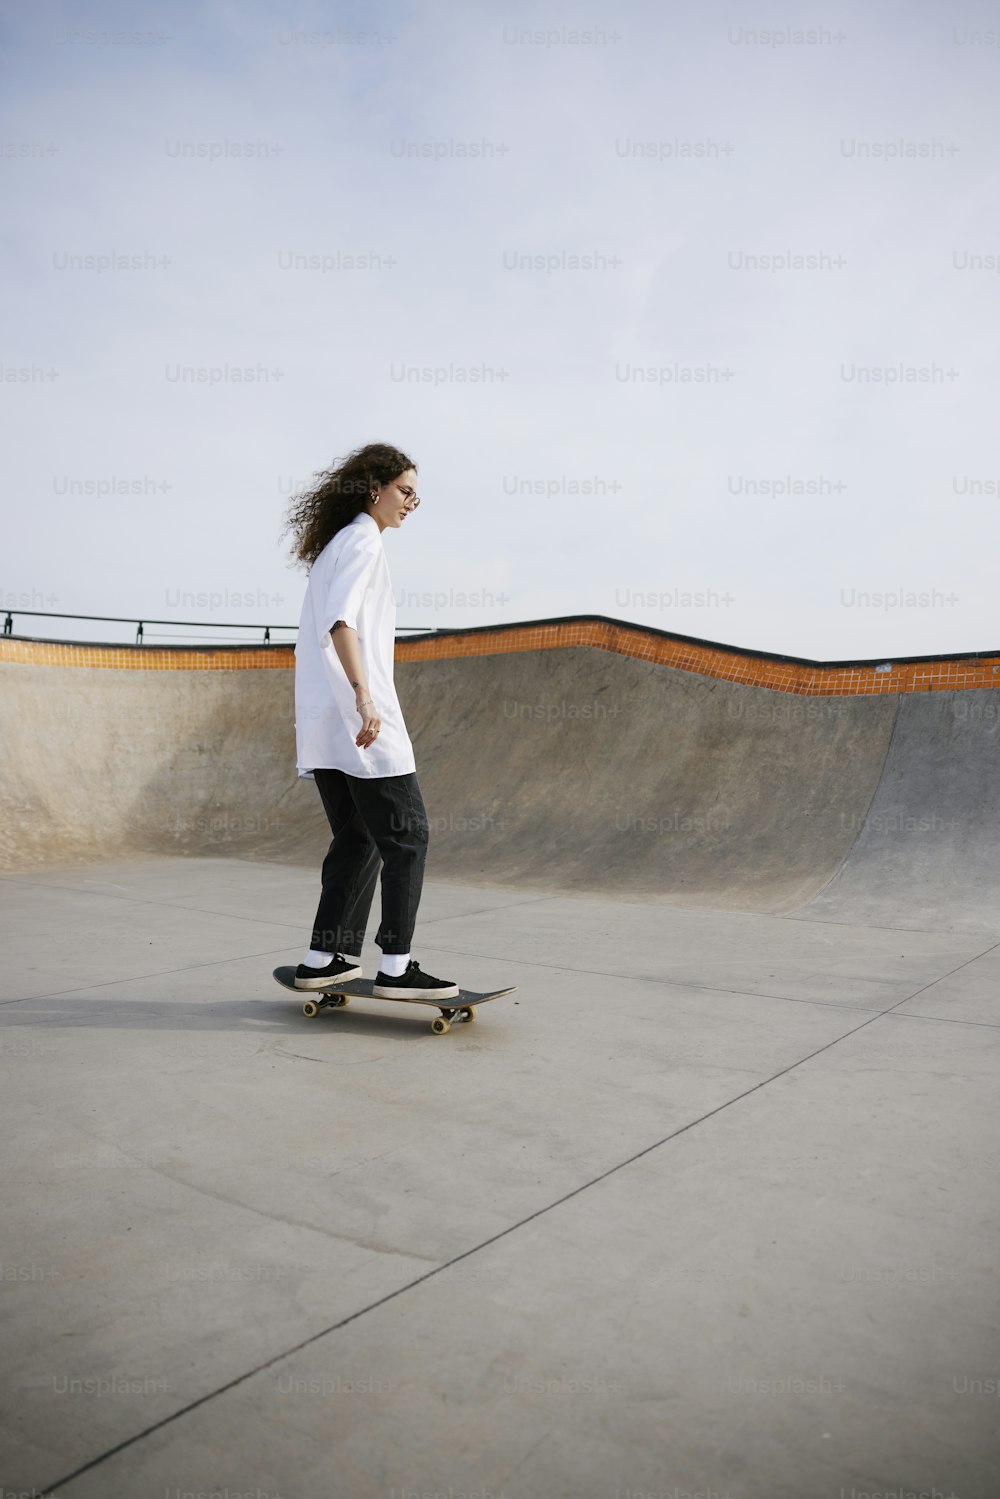 Un uomo che cavalca uno skateboard in uno skate park